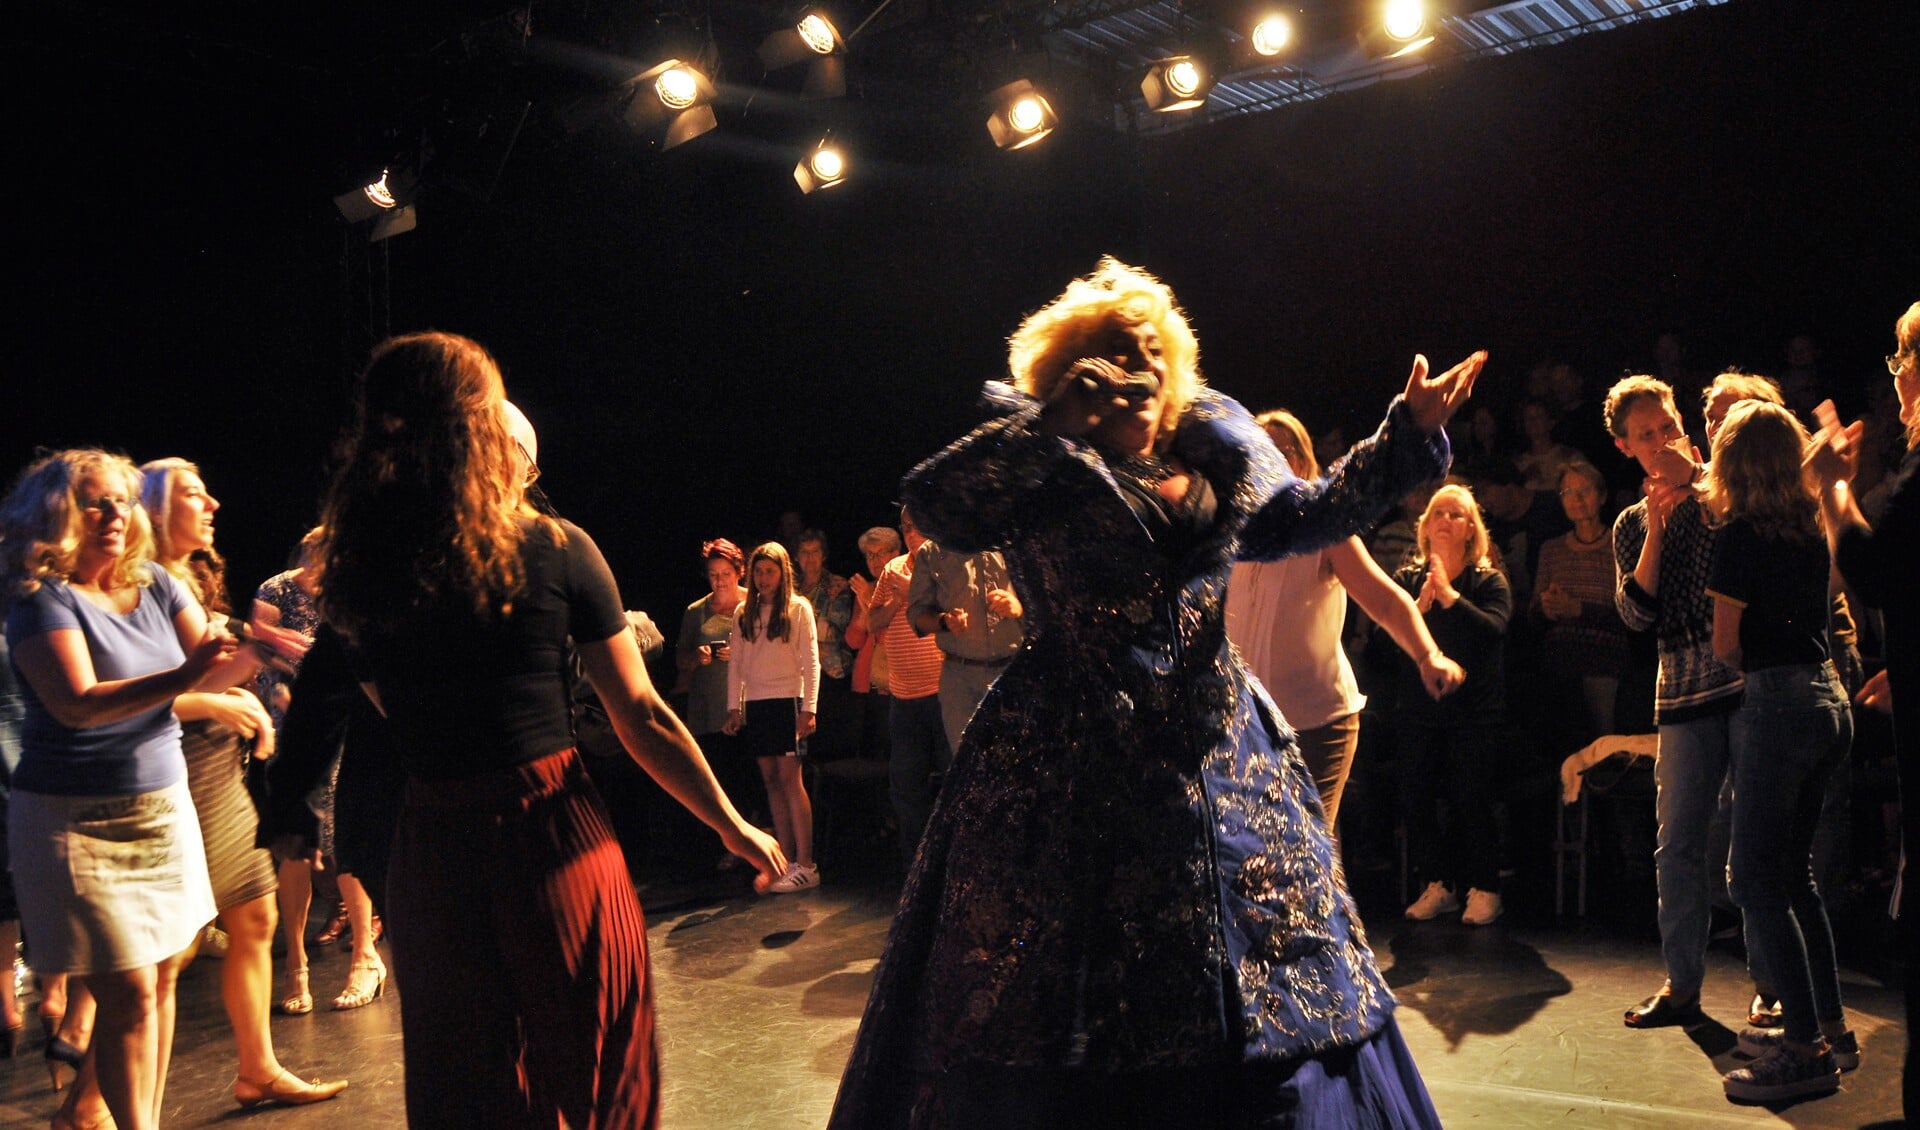 Karin Bloemen opende het Theaterpand Weesp op muzikale wijze. Muziek speelt komend seizoen een grote rol in het theater van Sara Kroos.